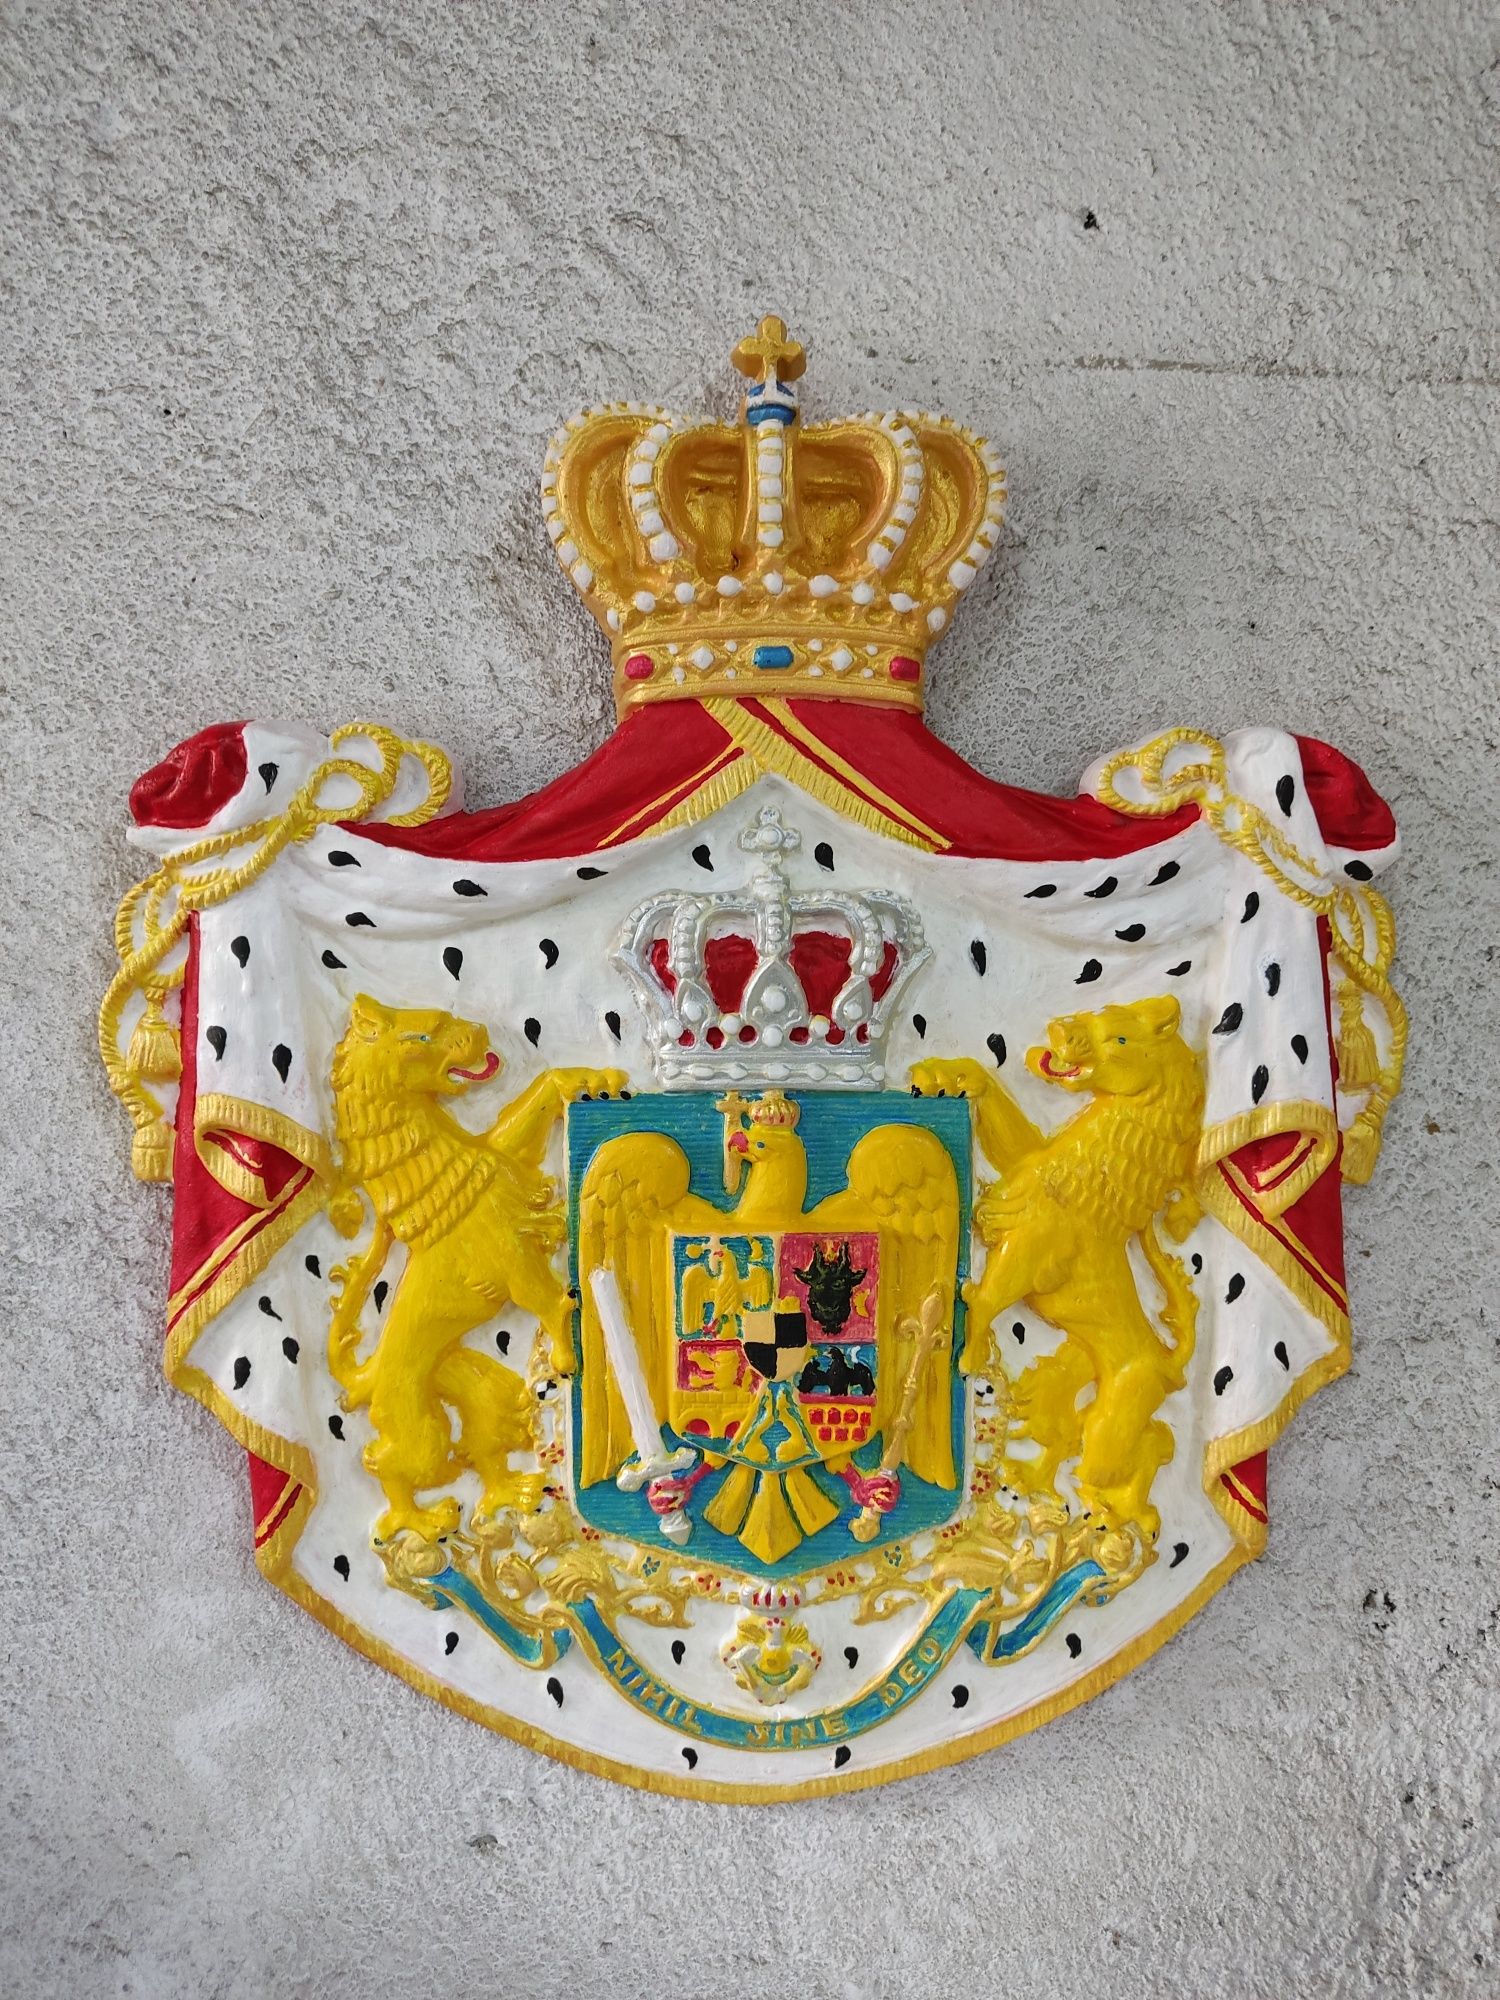 Stema Regală a României perioada regalistă